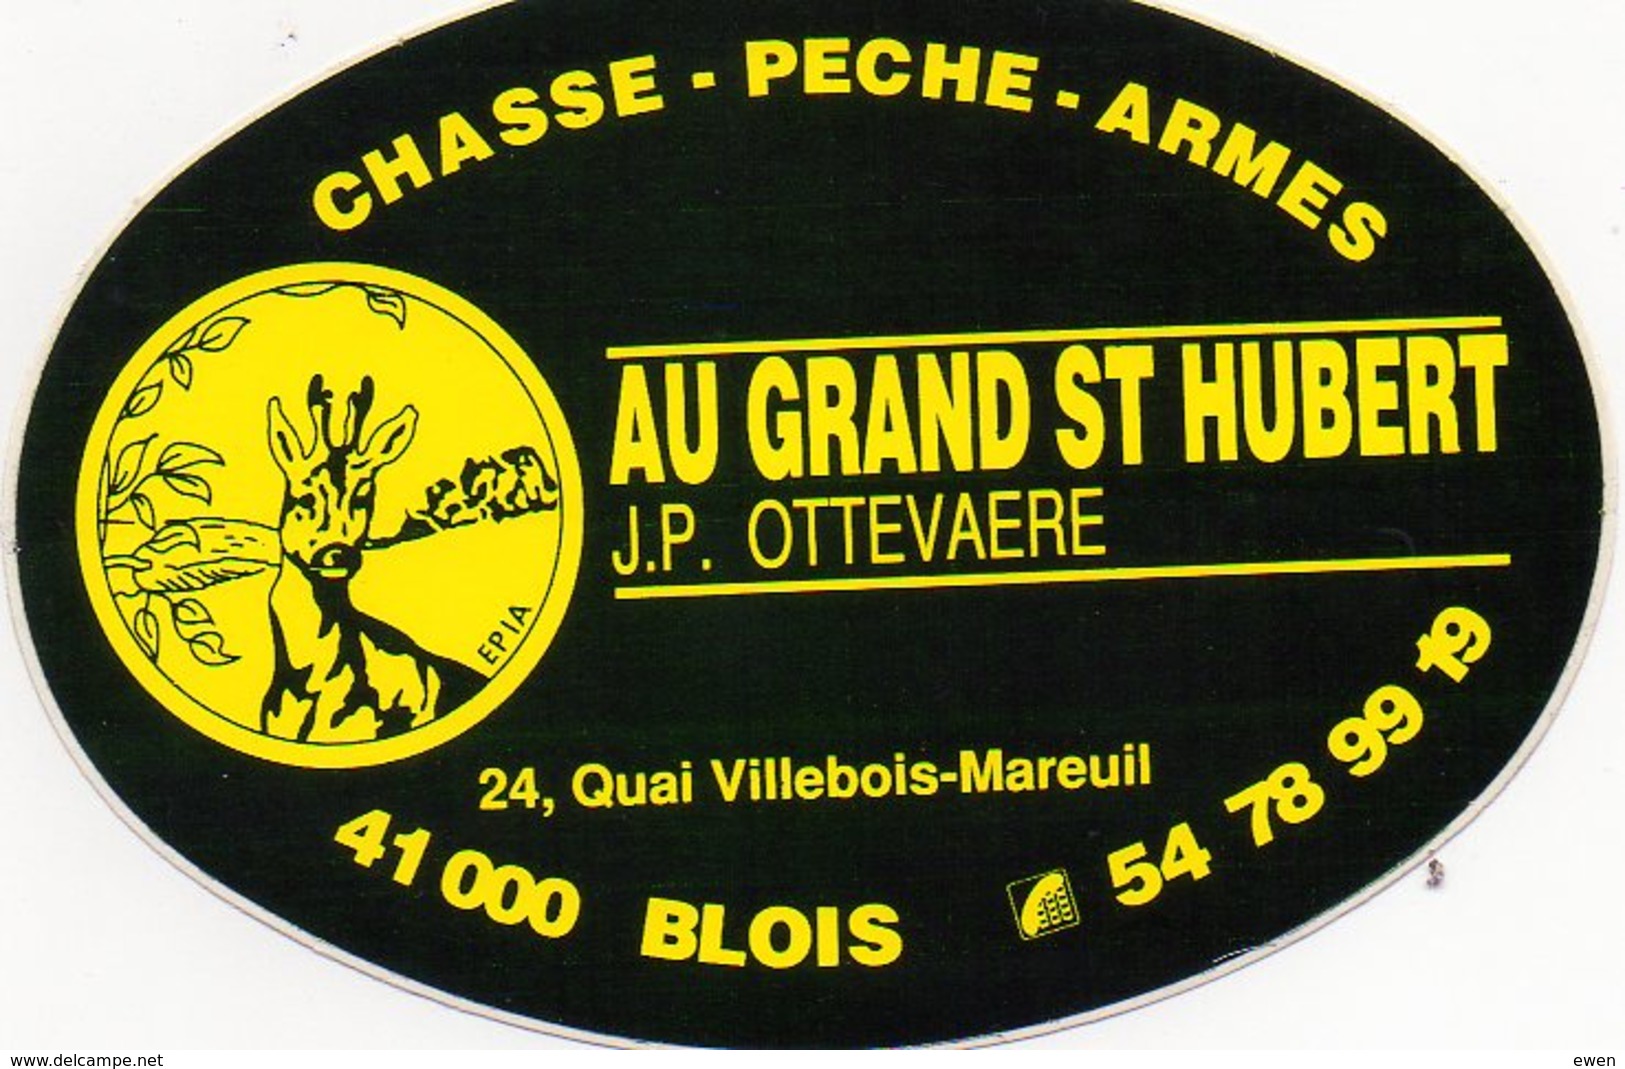 Blois. Autocollant Au Grand St Hubert. Chasse-Pêche-Armes. (Années 70). - Stickers